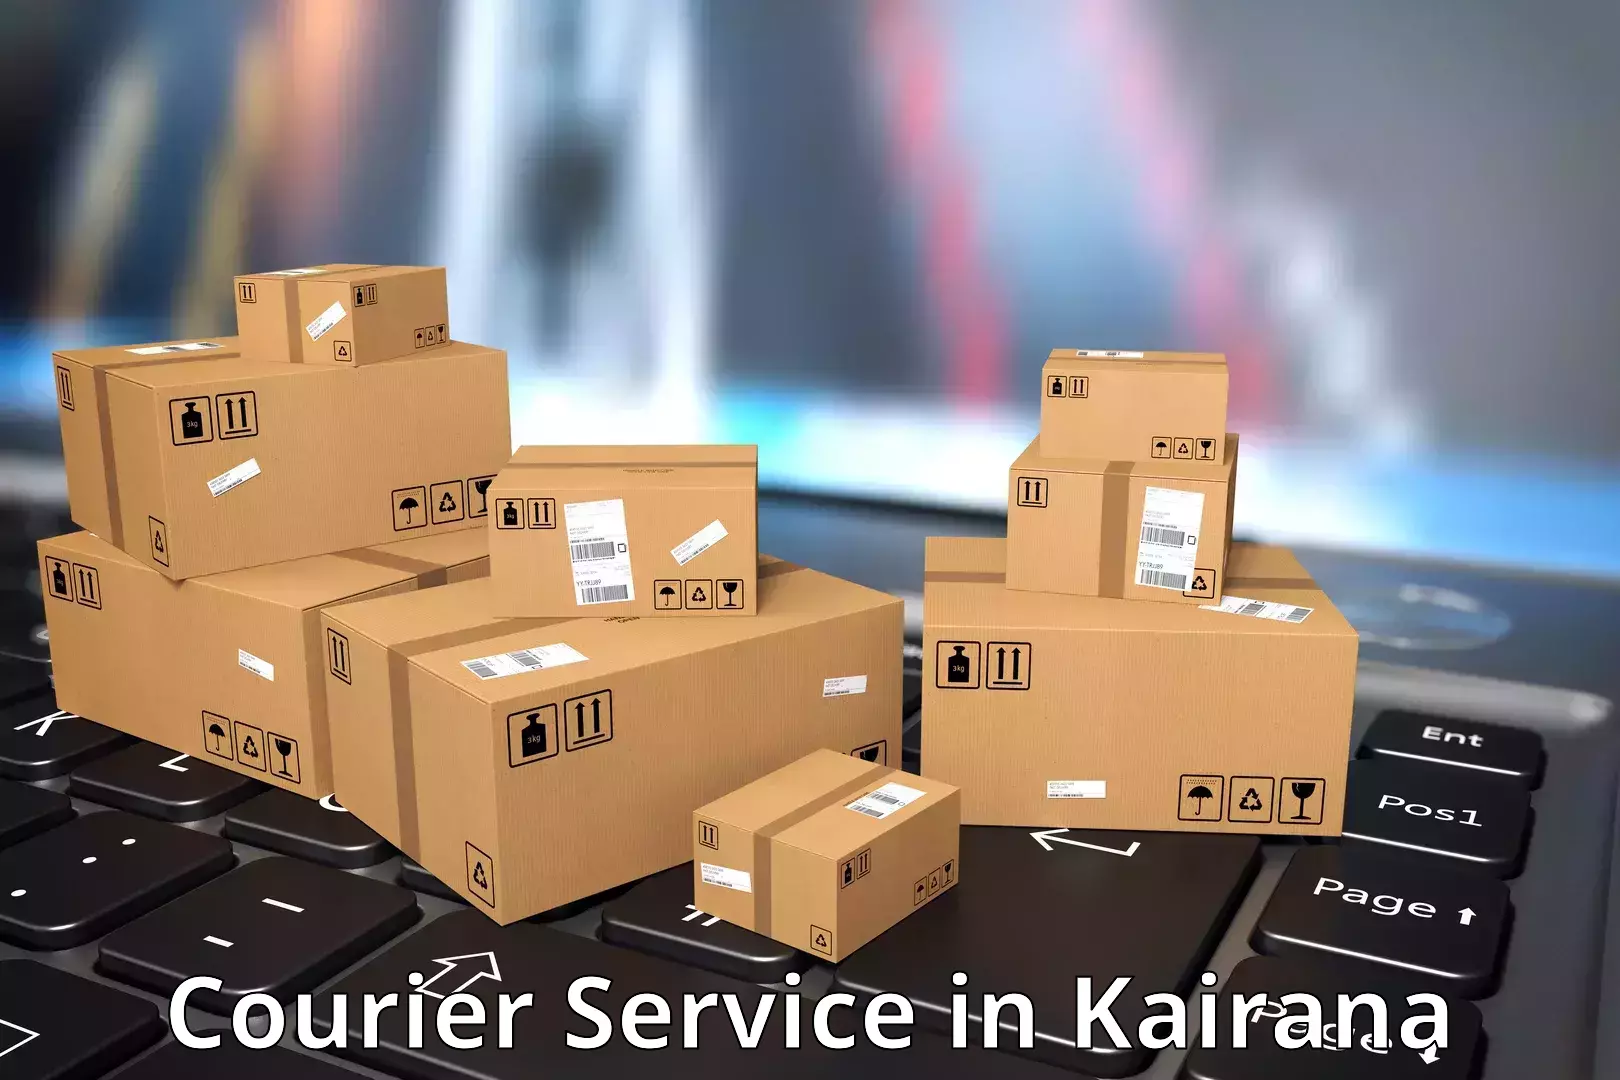 Remote area delivery in Kairana